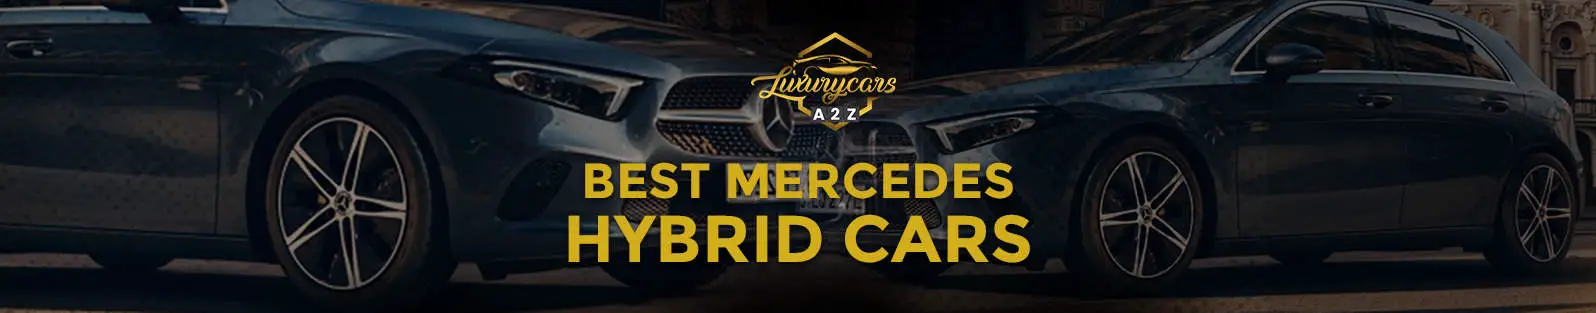 Les meilleures voitures hybrides Mercedes